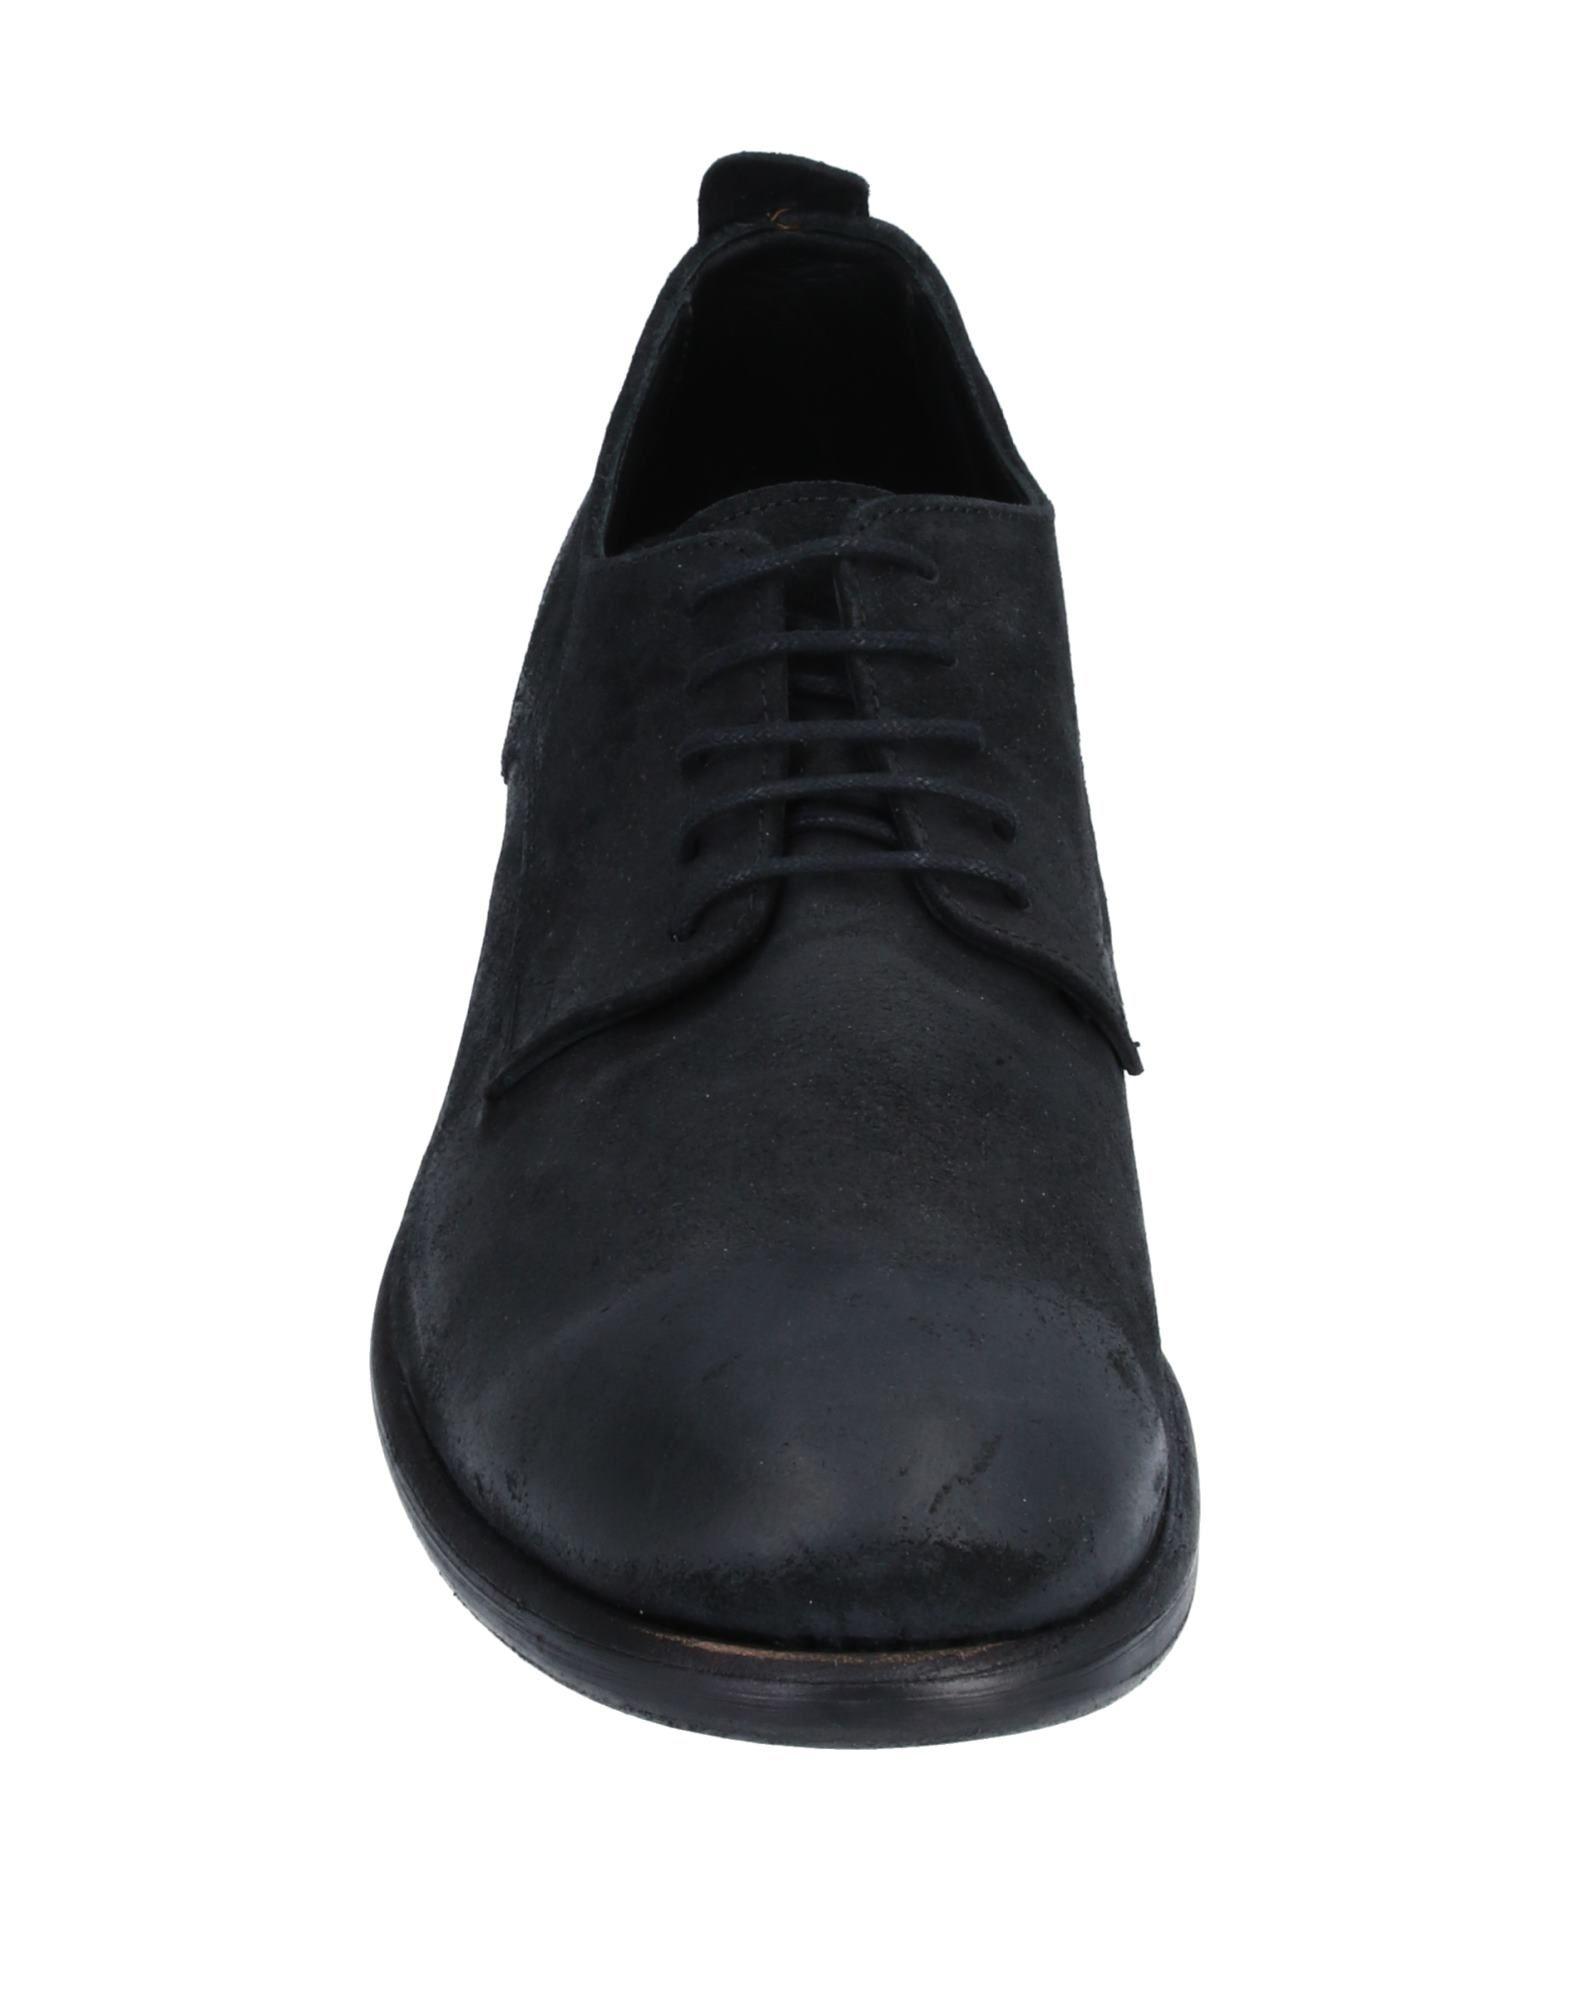 Savio Barbato Lace-up Shoe in Black for Men - Lyst